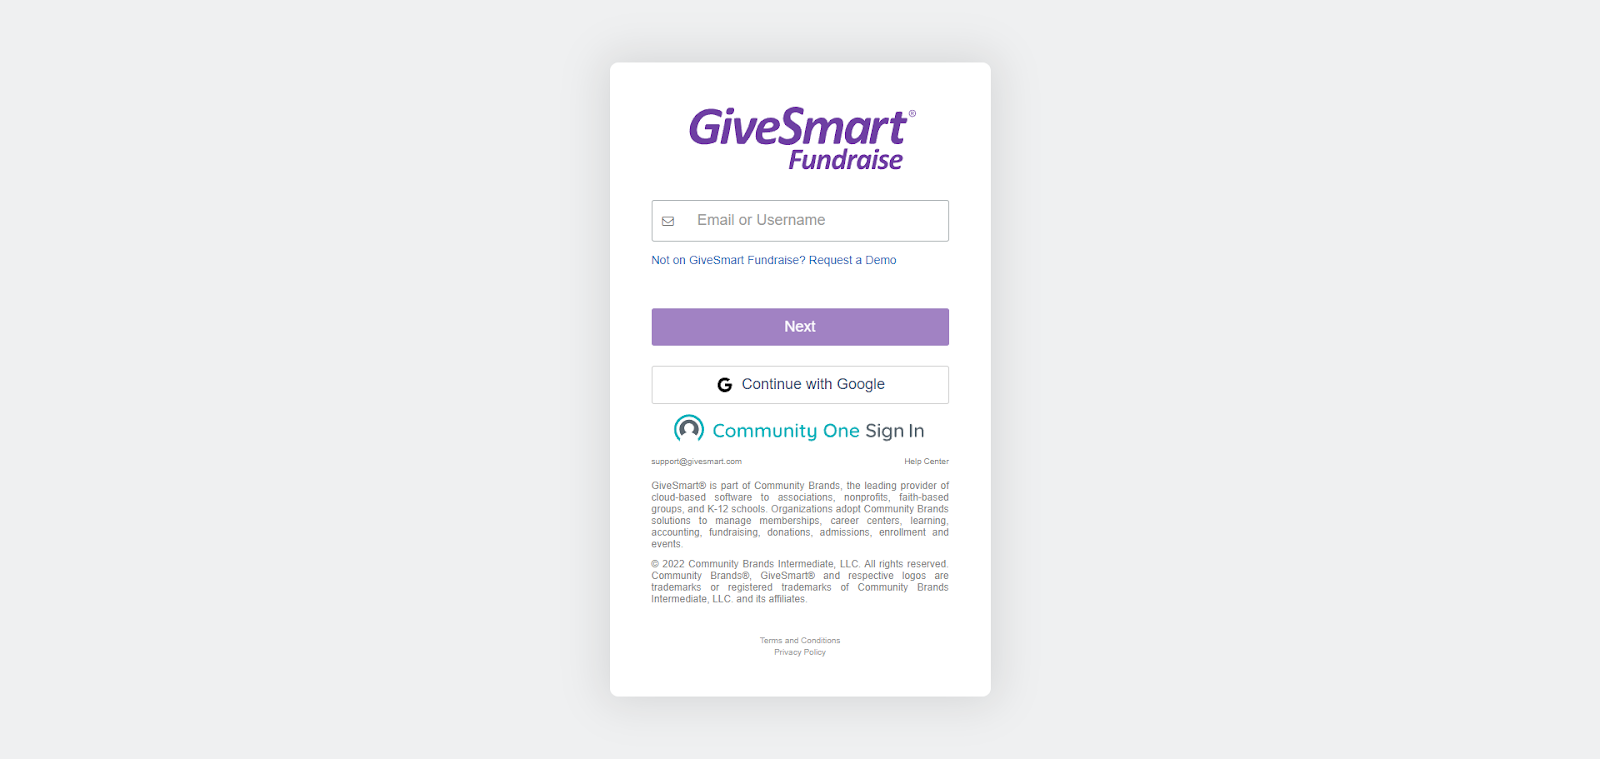 A screenshot of GiveSmart's website